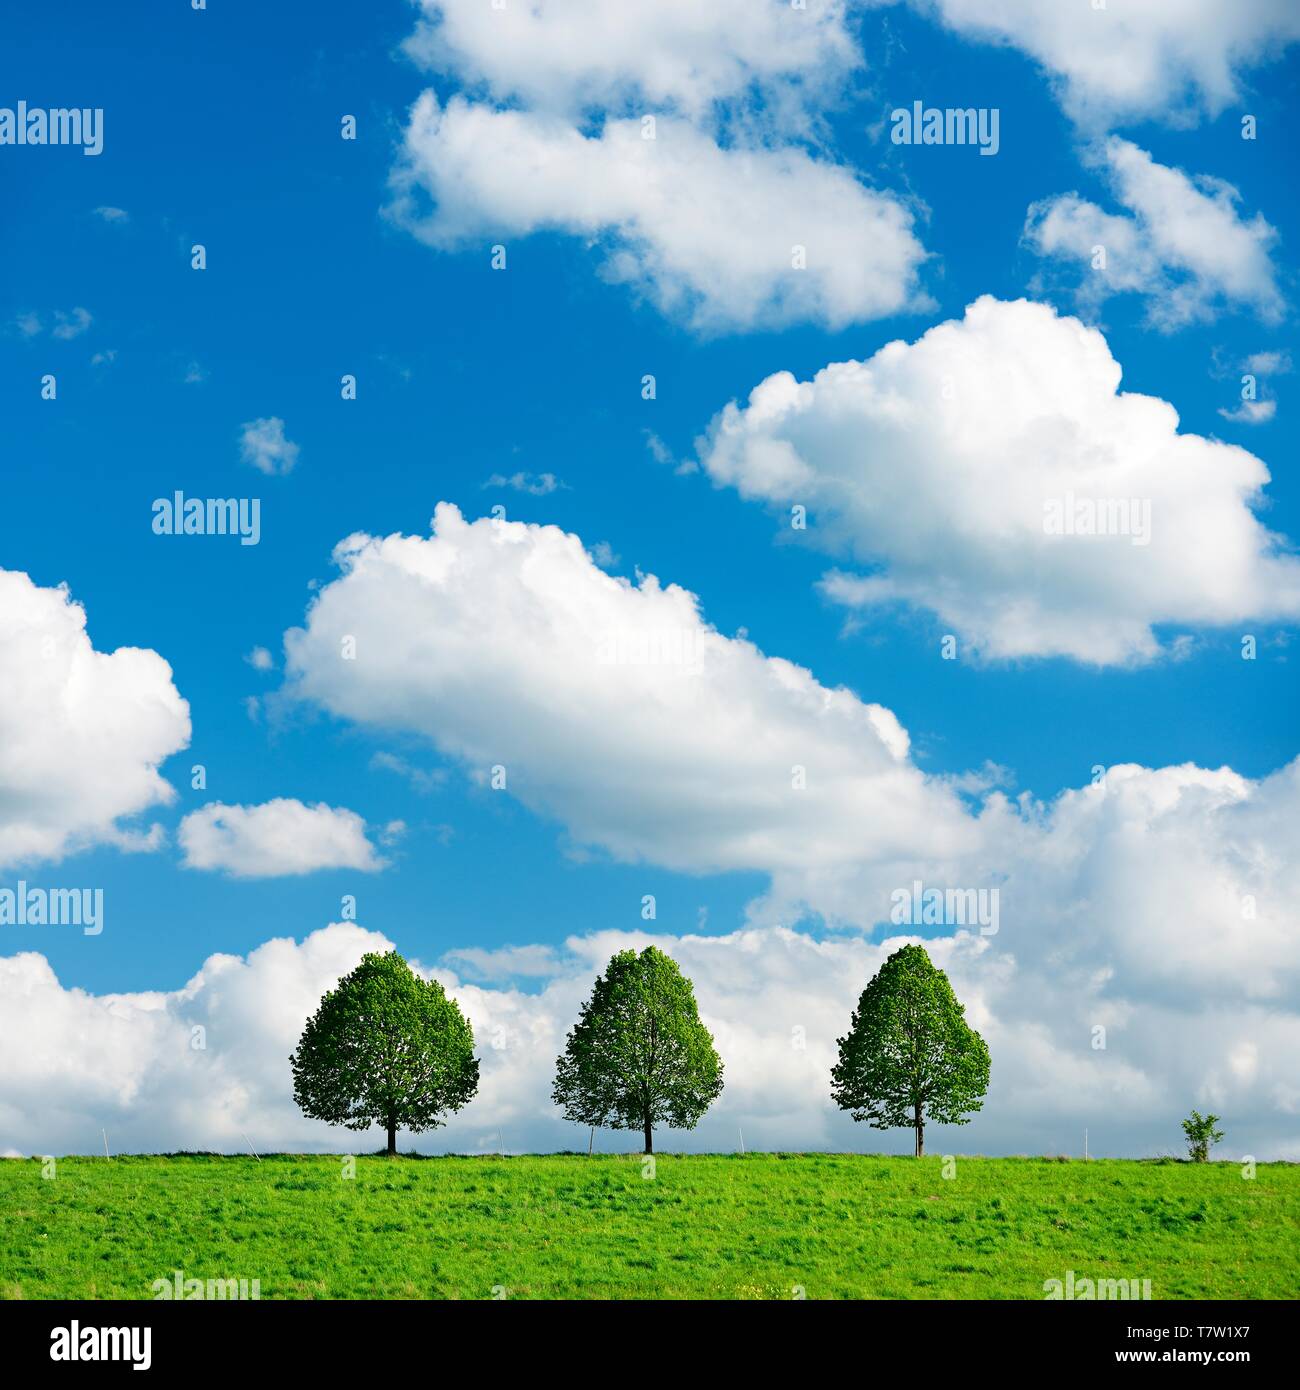 Kulturlandschaft im Frühjahr, drei kleine Linden auf einer grünen Wiese, blauer Himmel mit Wolken cumulus, Burgenlandkreis, Sachsen-Anhalt, Deutschland Stockfoto